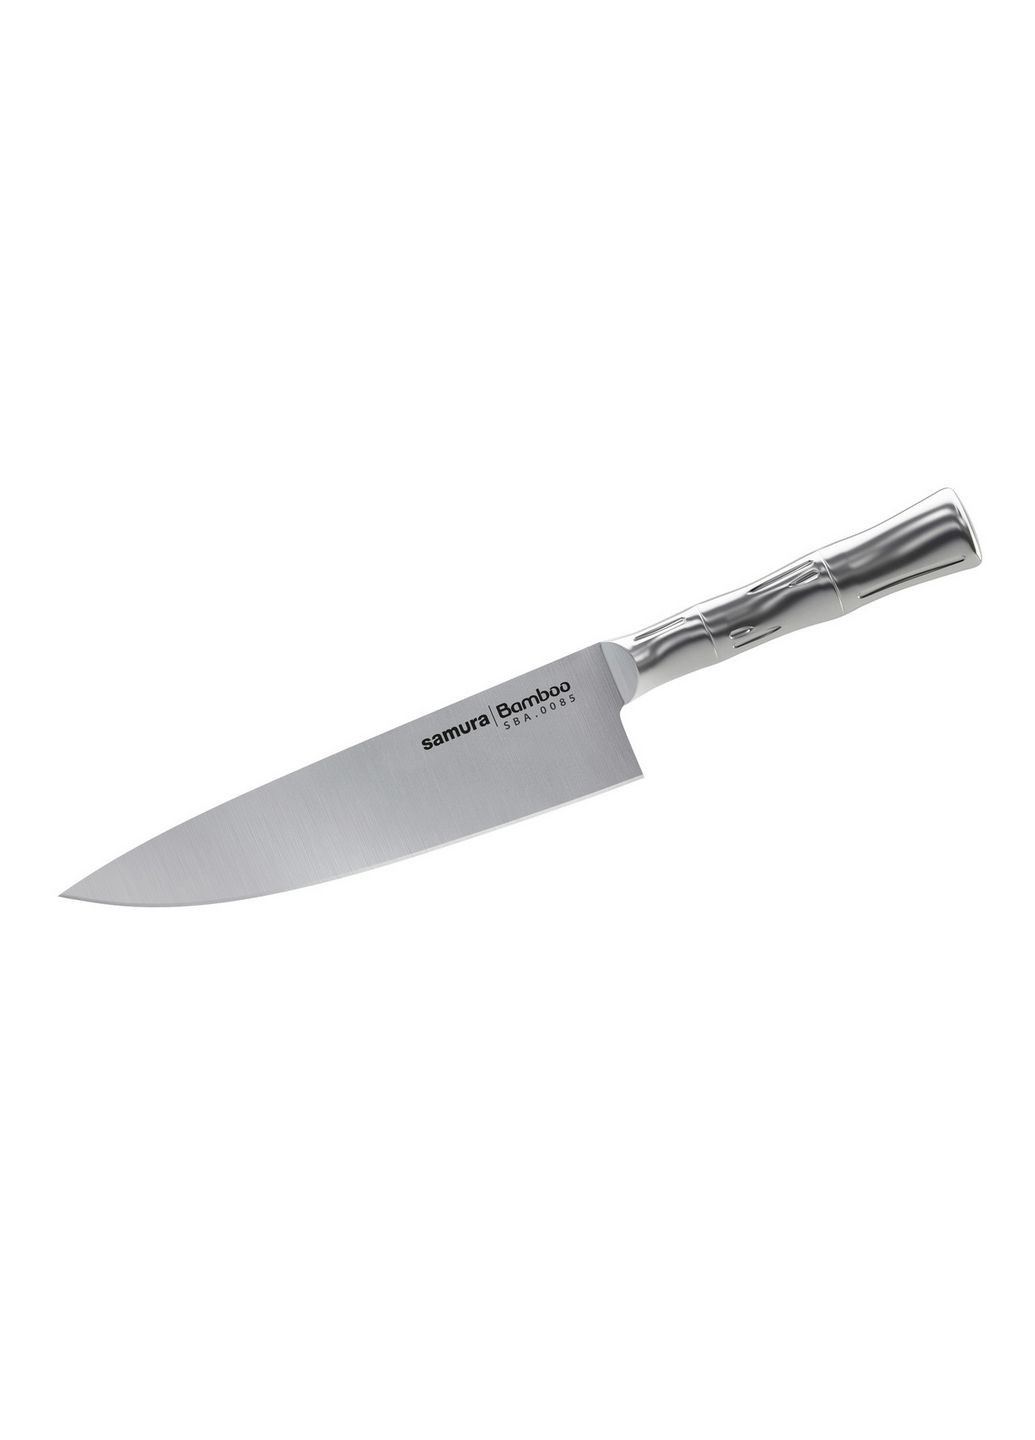 Нож кухонный шеф 200 мм Samura нержавеющая сталь,